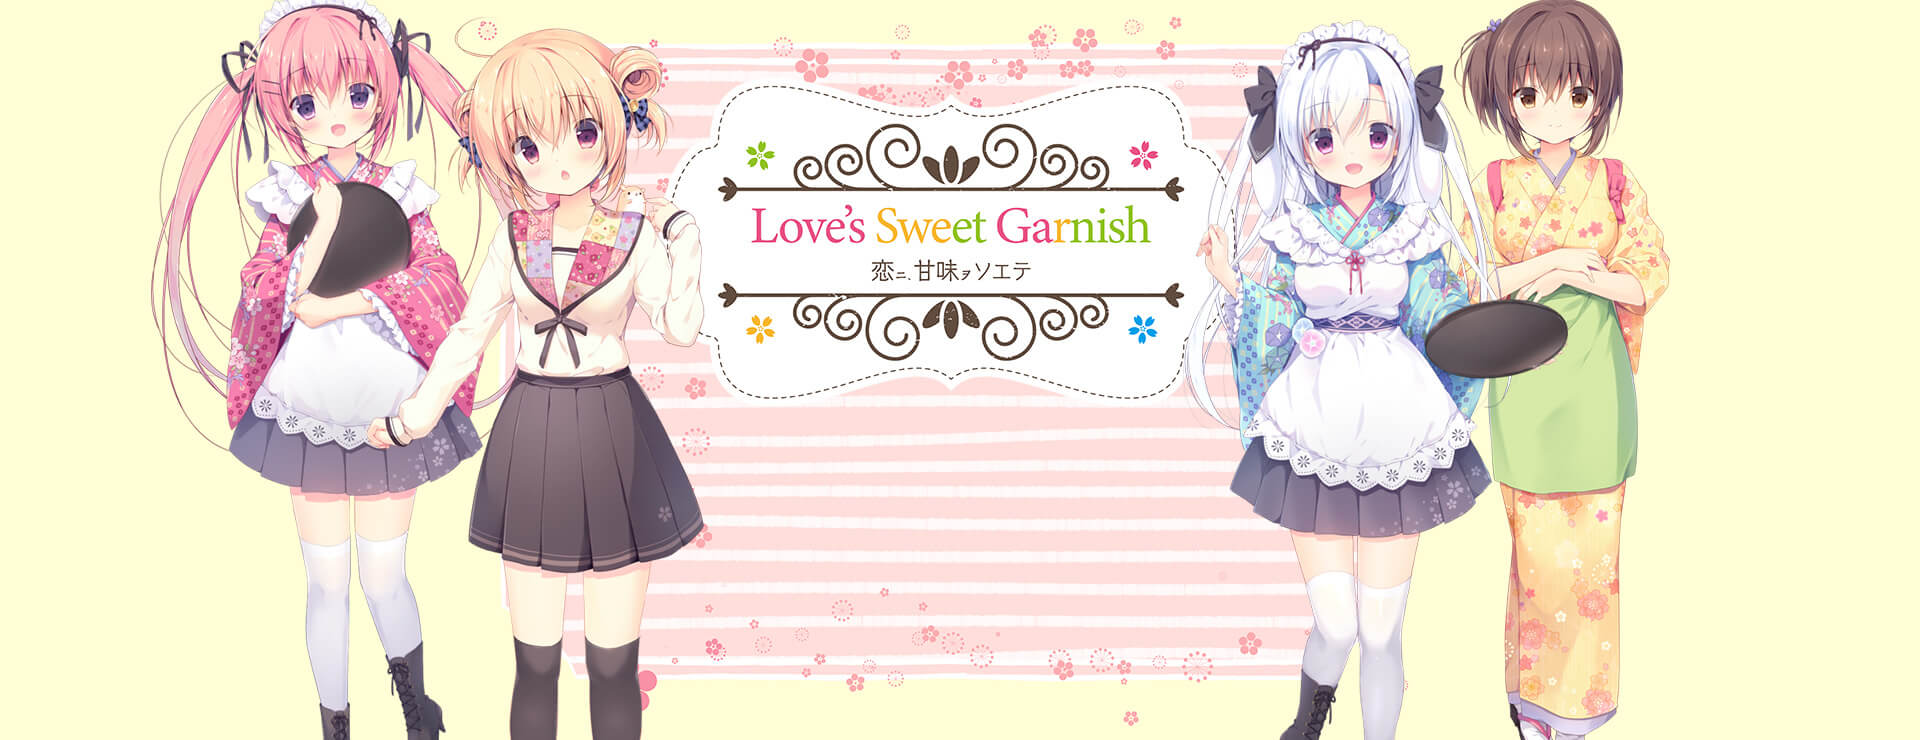 Love's Sweet Garnish - 虚拟小说 遊戲